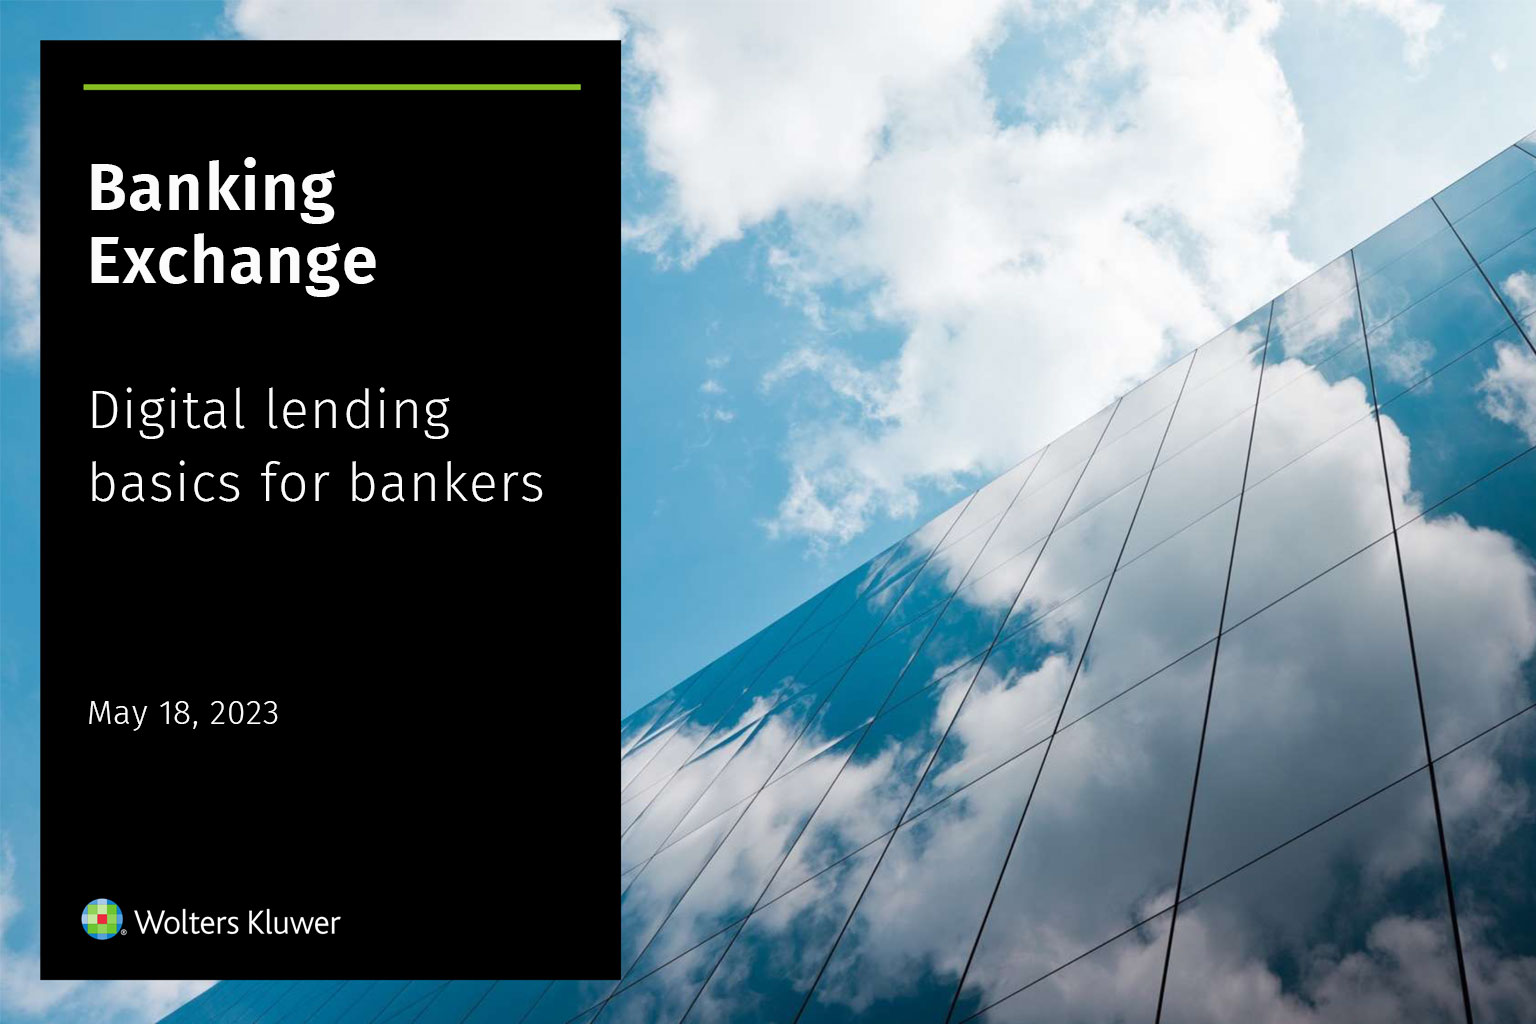 Digital lending basics for bankers